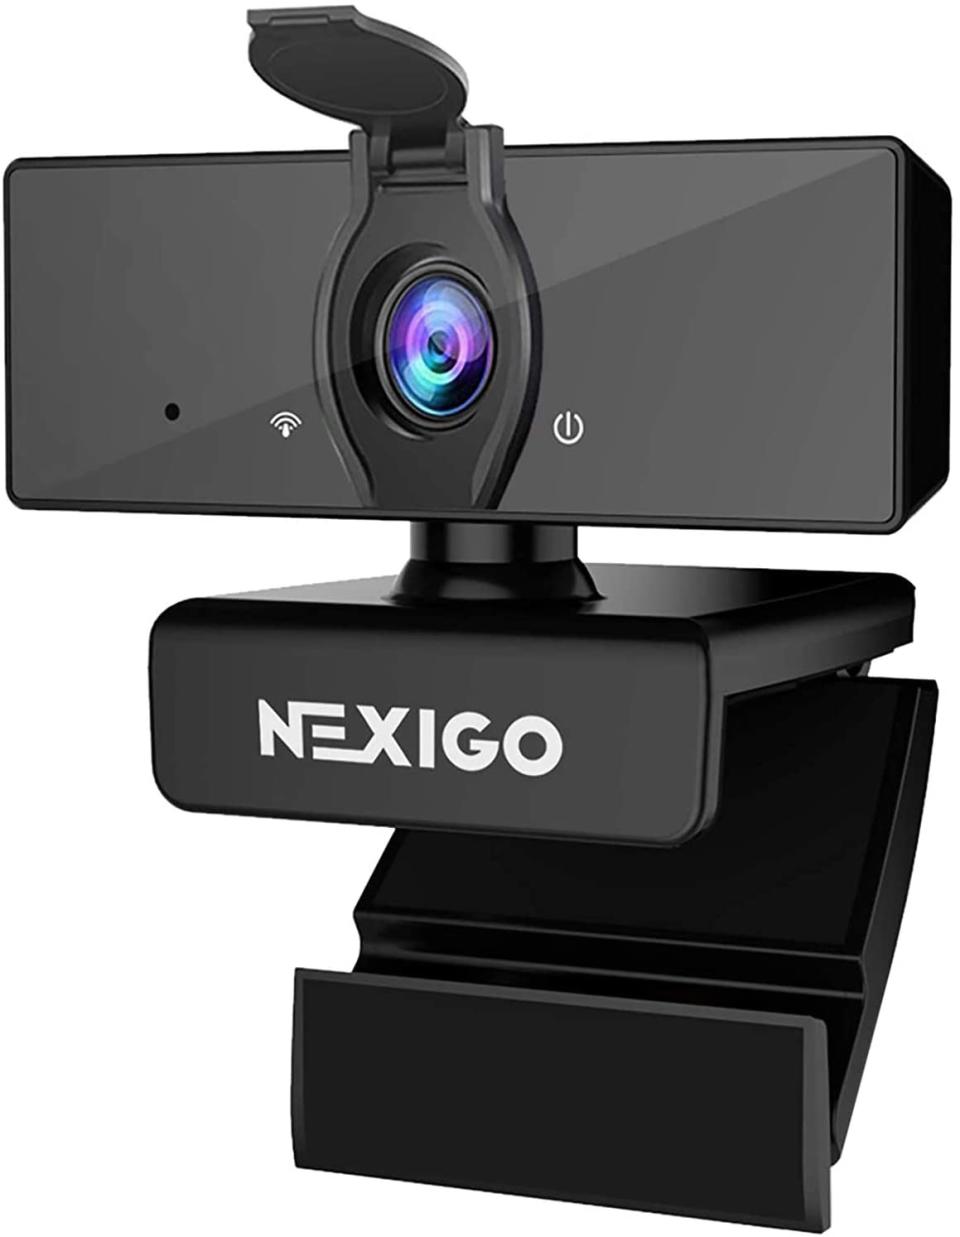 NexiGo 1080P Business Webcam. Image via Amazon.